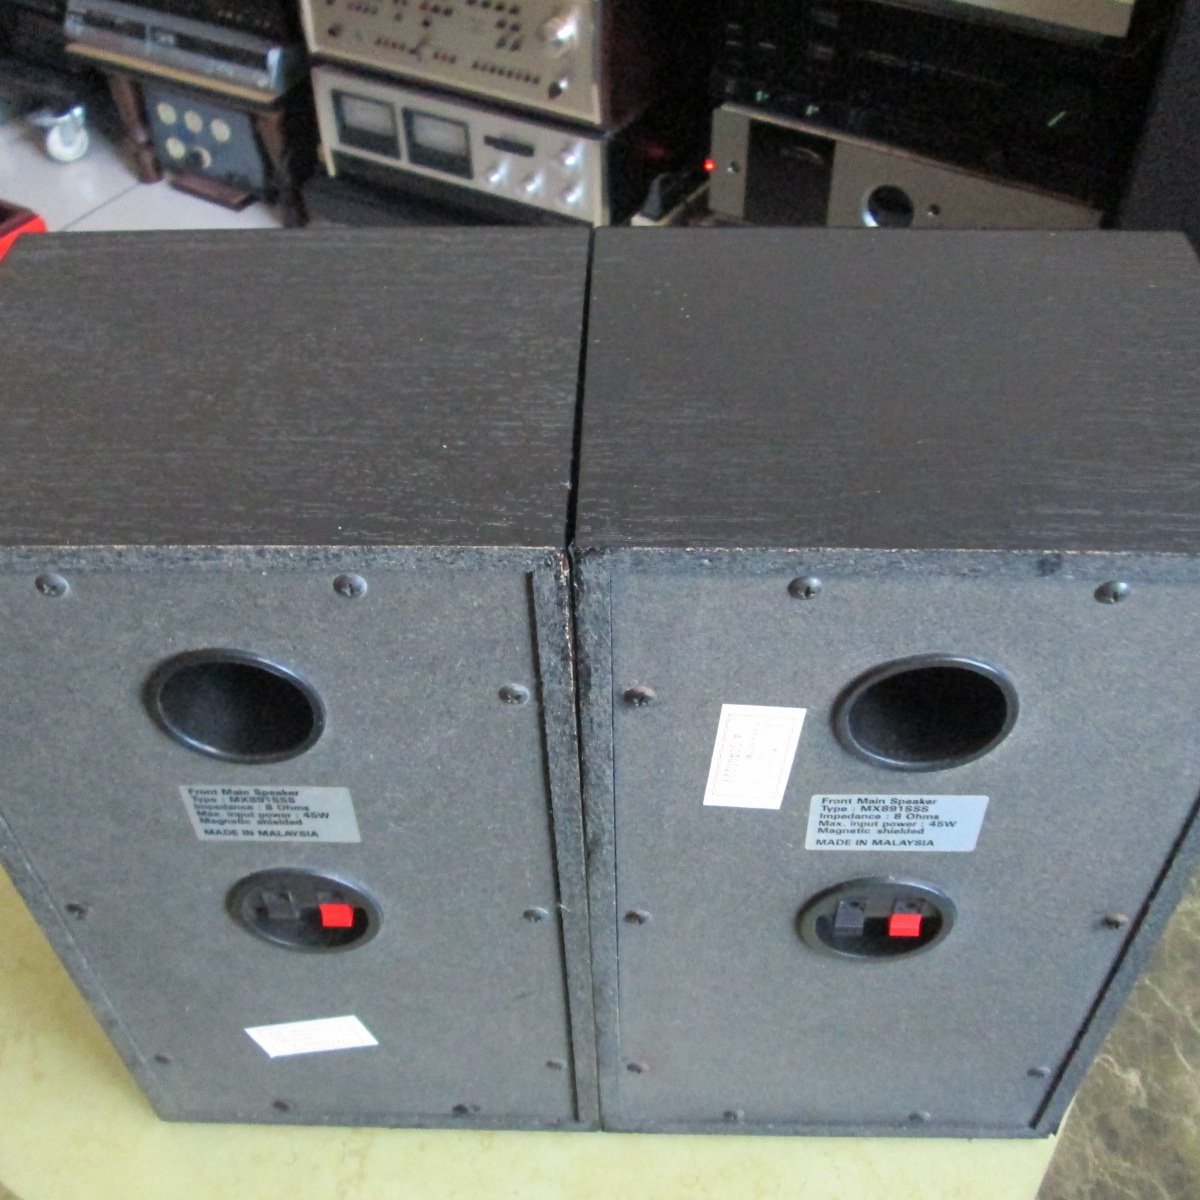 老楊音響二手美商Magnavox MX891SSS 5.5吋二音路桌上型喇叭1對品相尚佳 